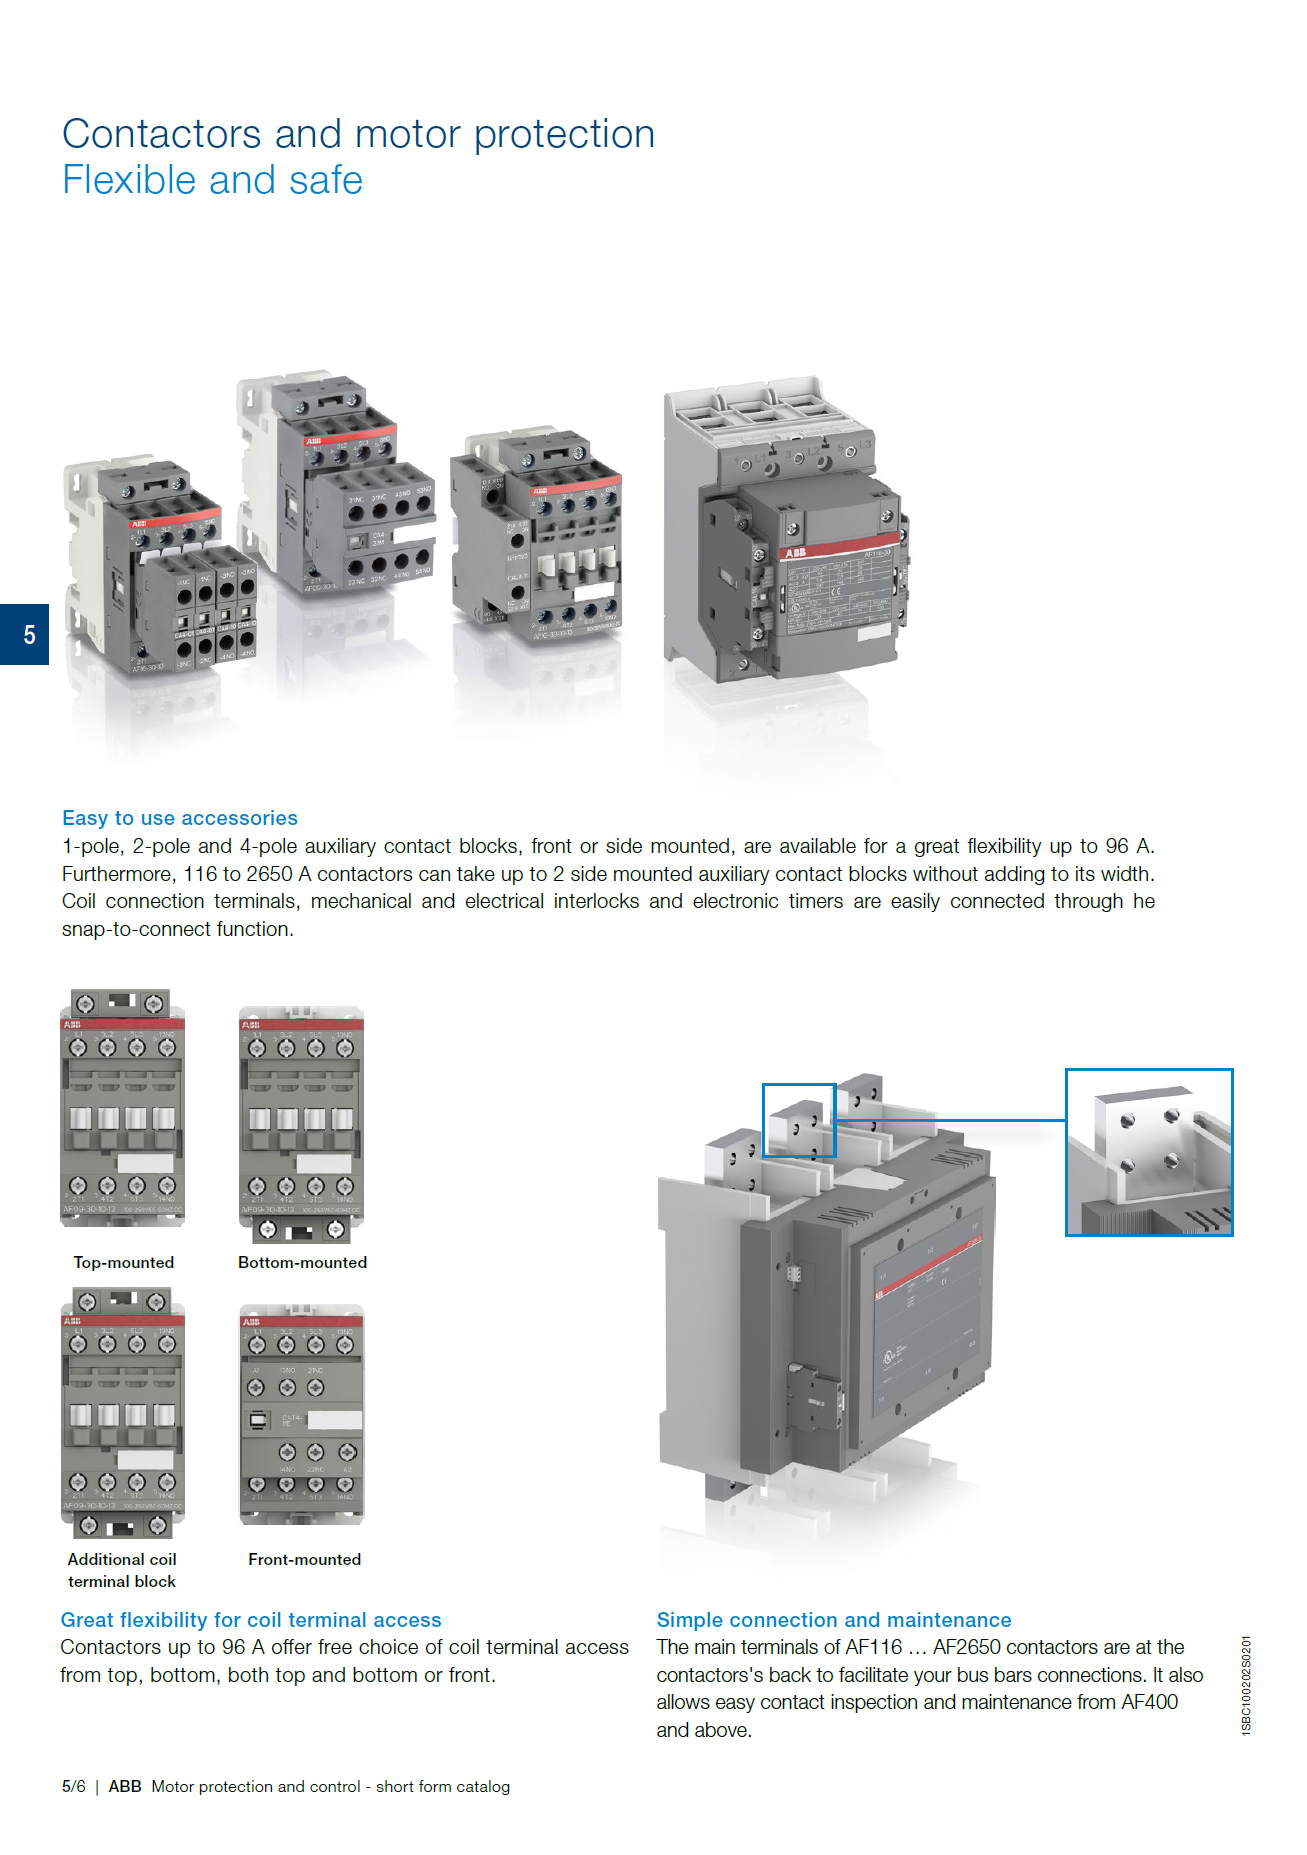 ABB Magnetic Contactors AF Series : AF80-40-00